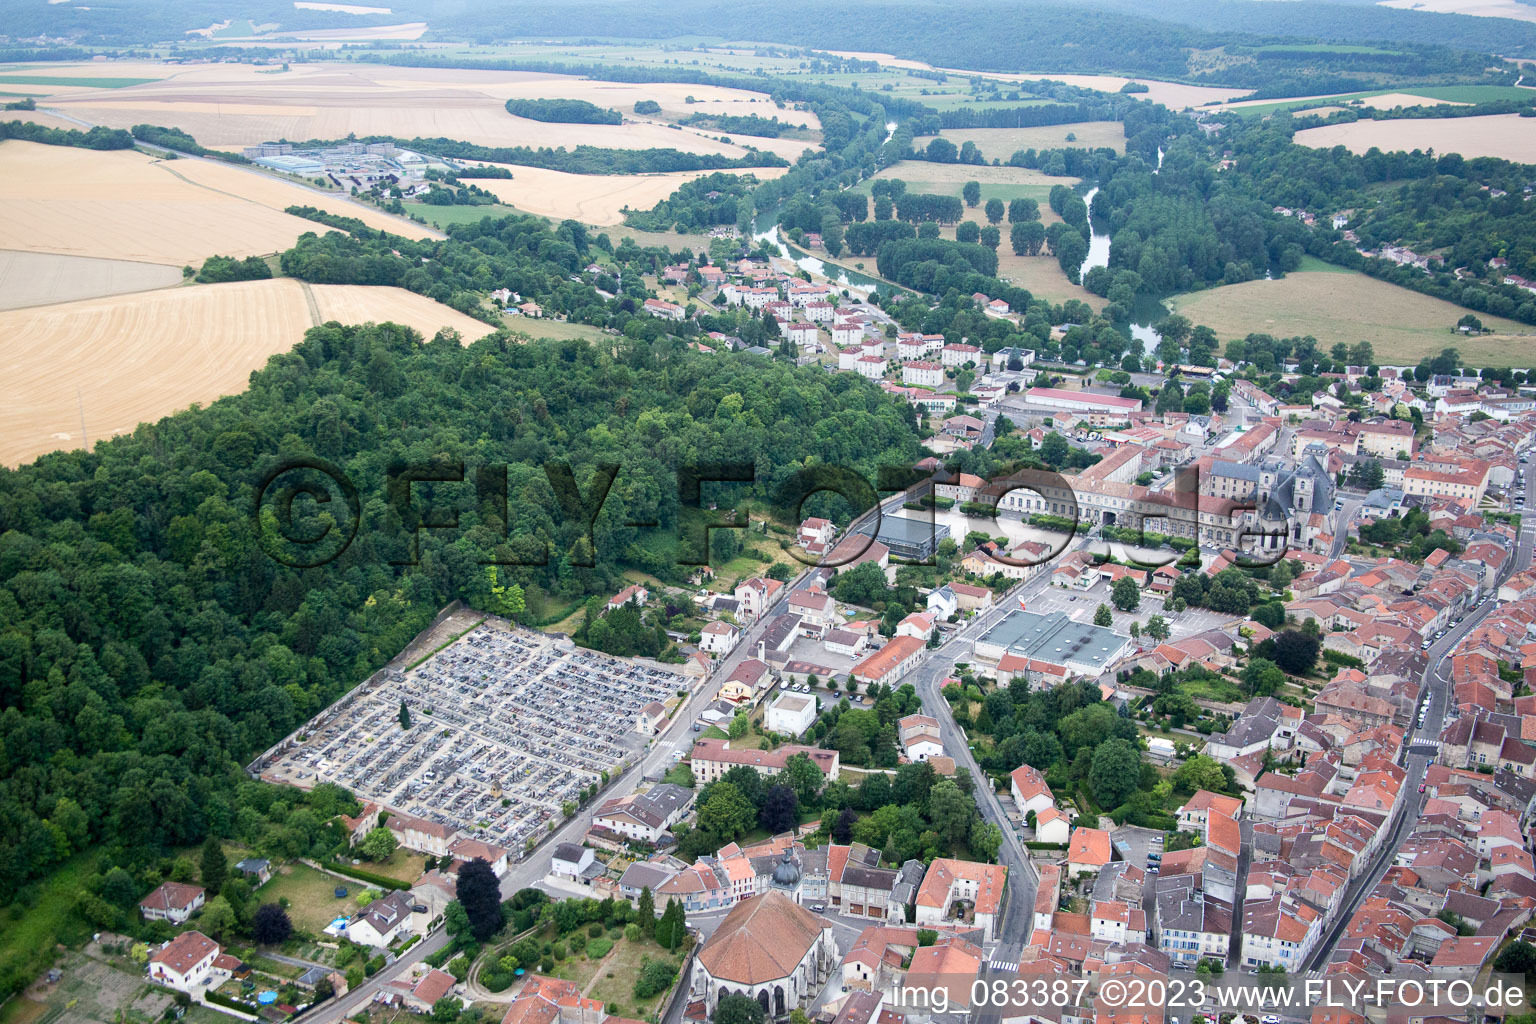 Luftbild von Saint-Mihiel im Bundesland Meuse, Frankreich